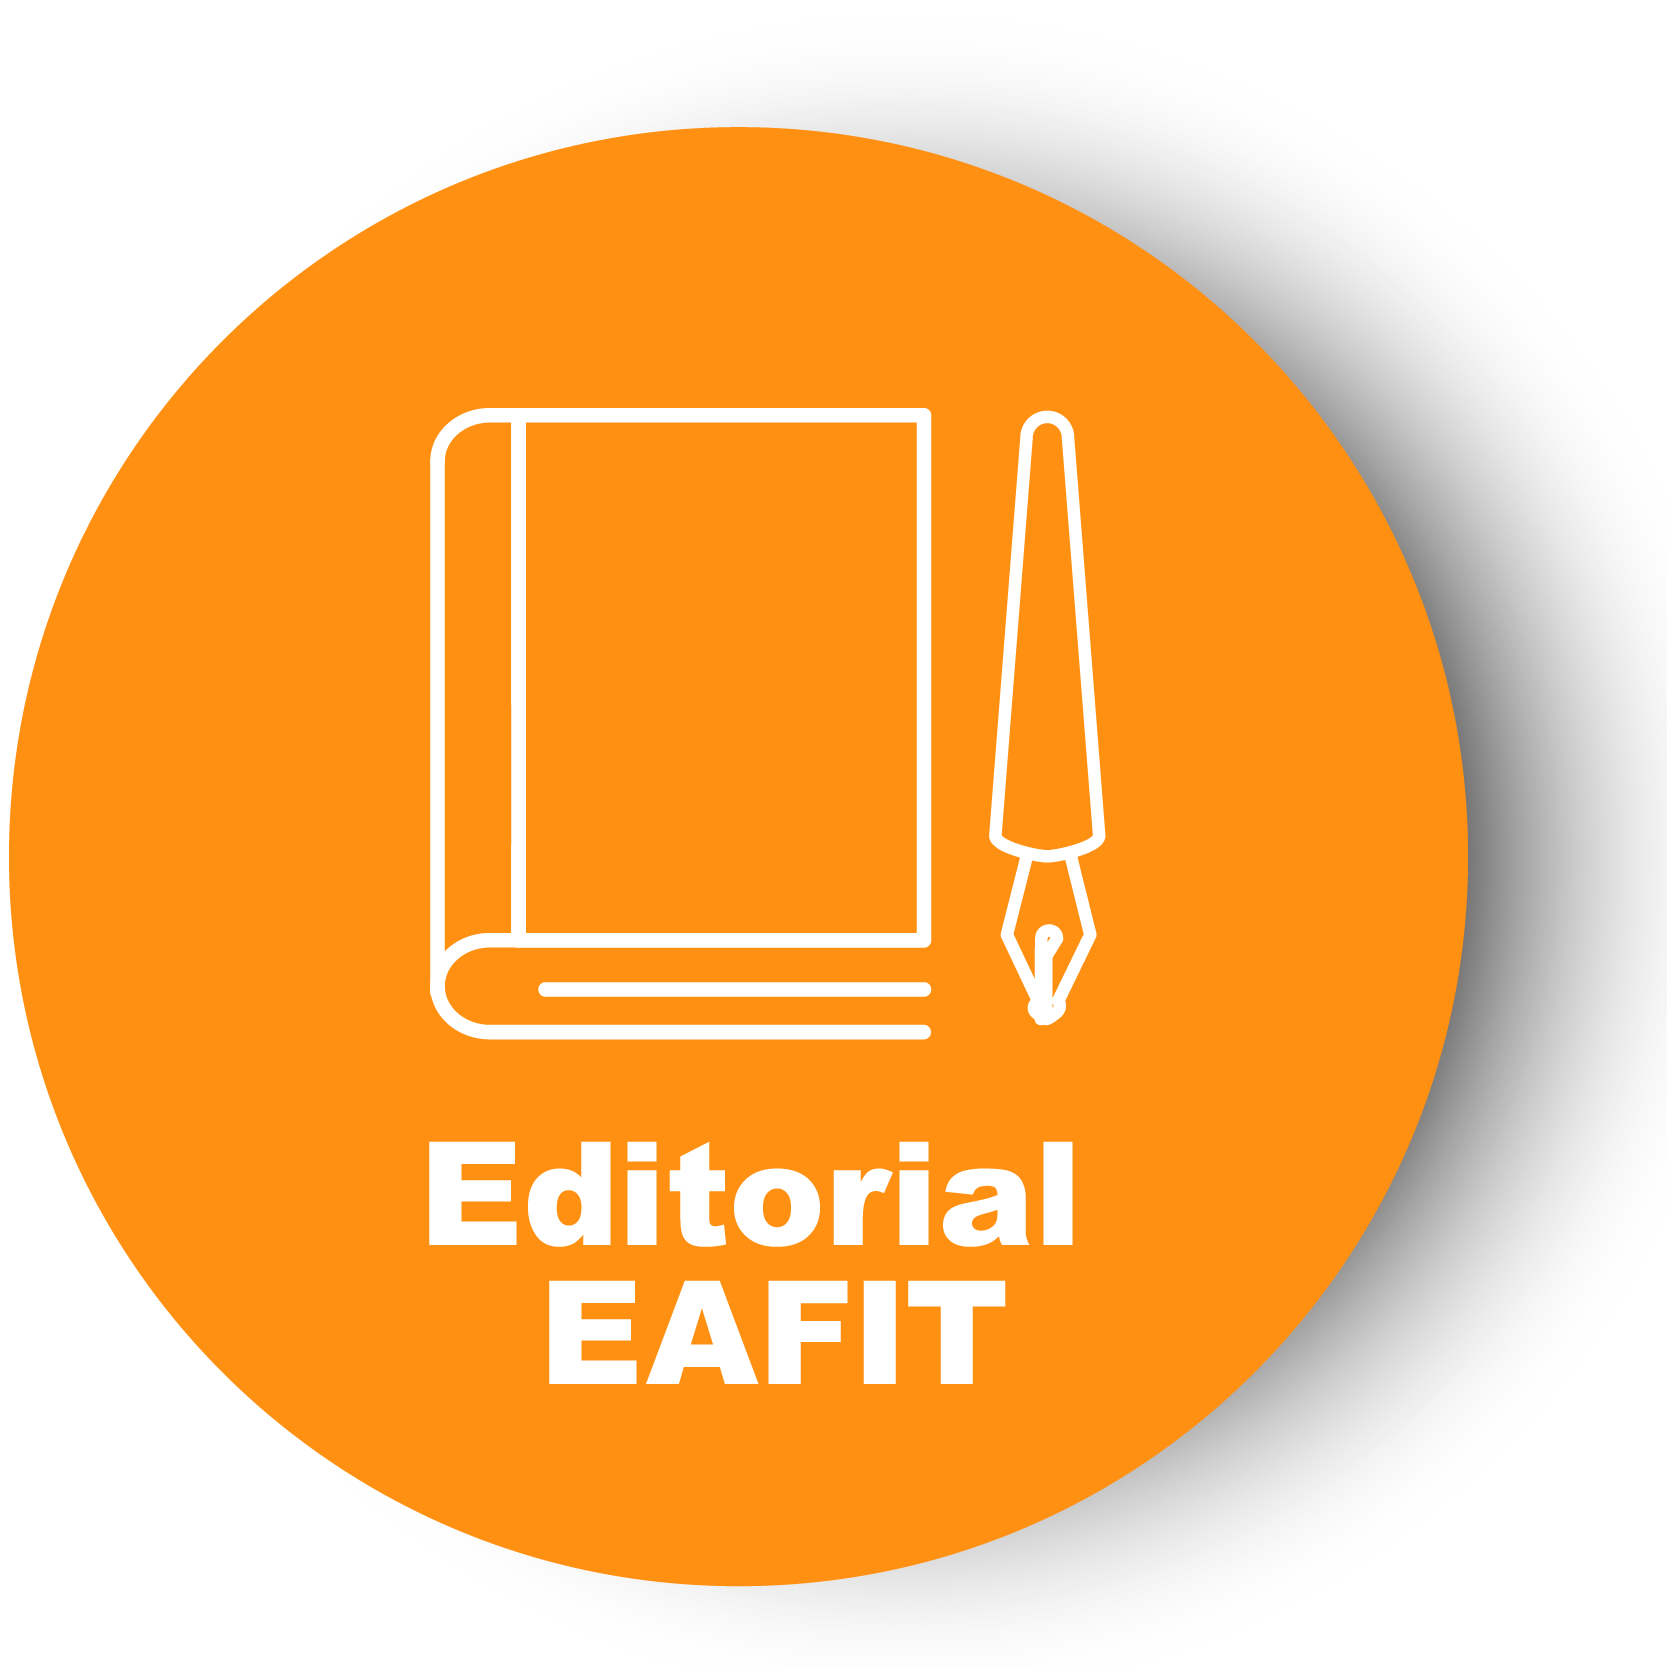 EAFIT - Editorial EAFIT